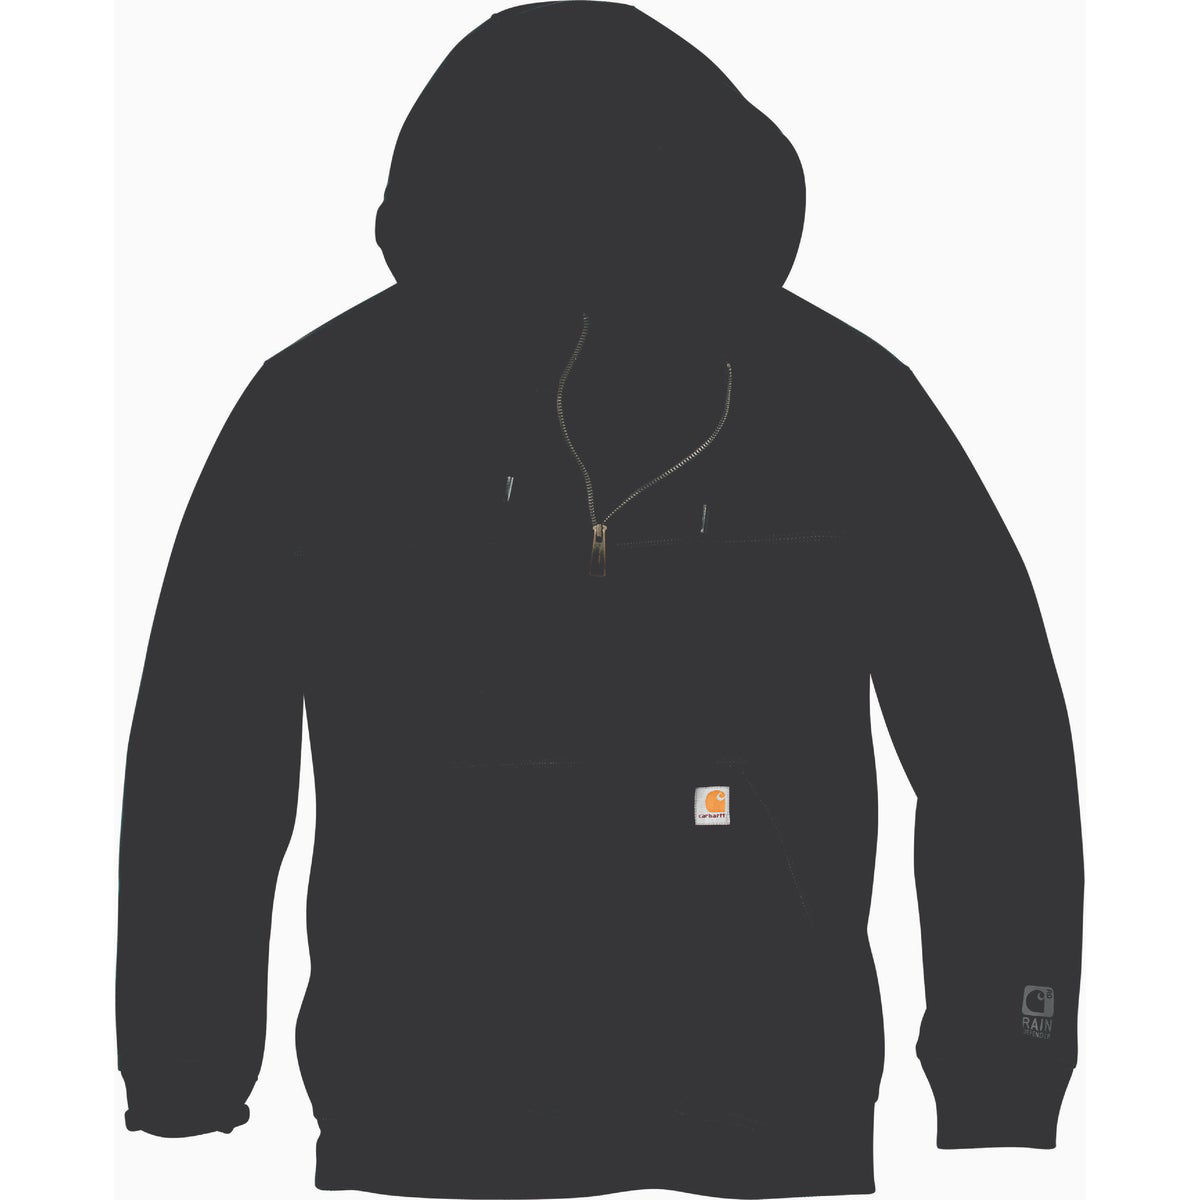 Rain defender® loose fit heavyweight quarter-zip hoodie - Black